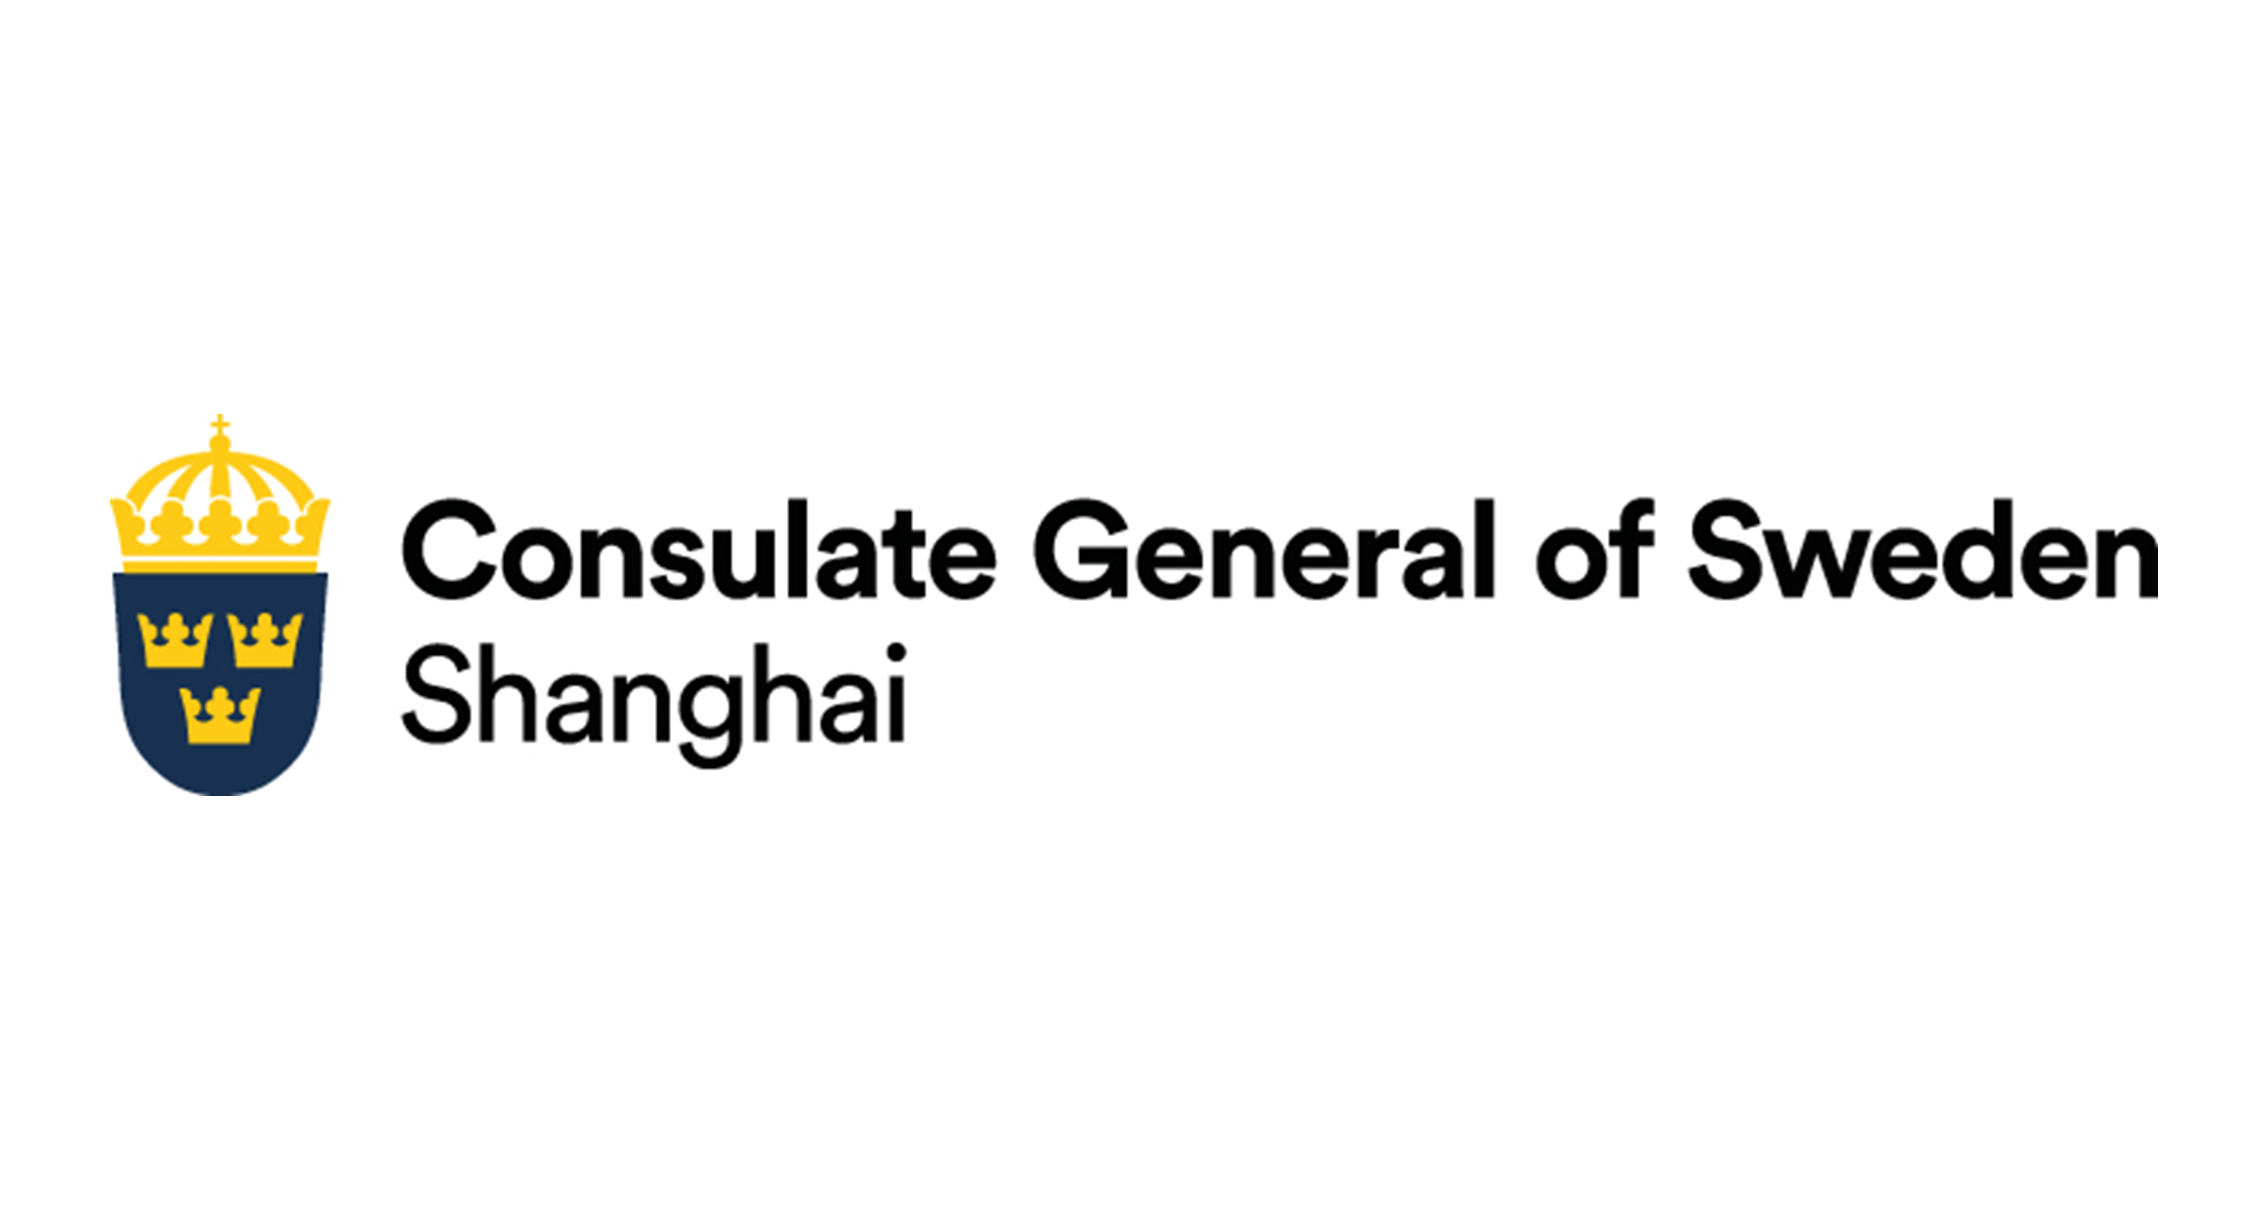 瑞典驻上海总领事馆 Consulate General of Sweden in Shanghai